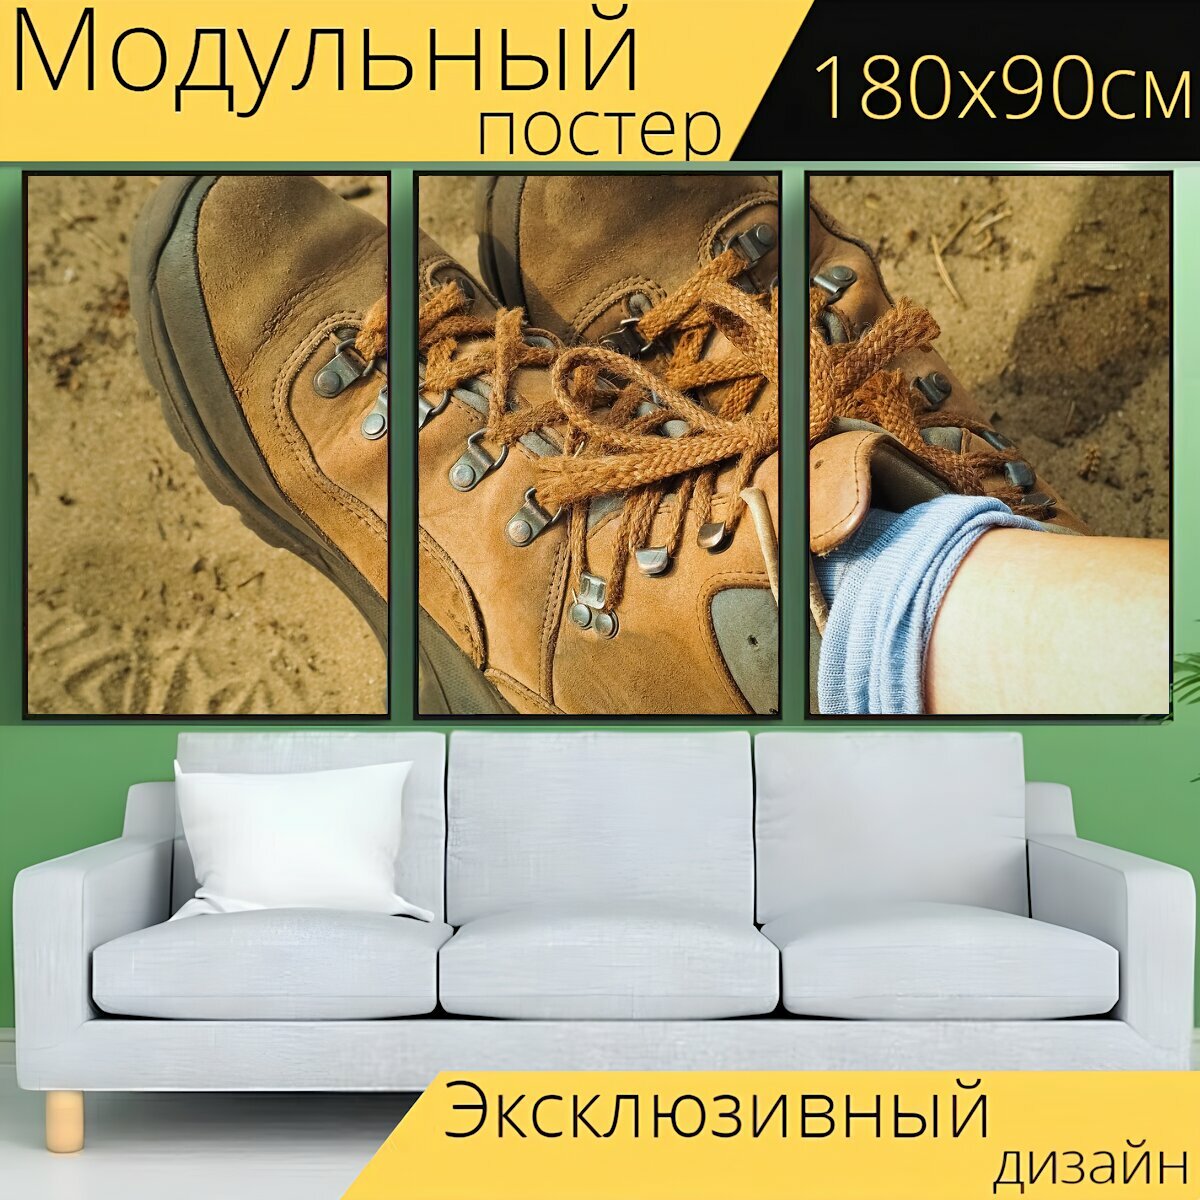 Модульный постер "Ботинки для прогулки, обувь, поход" 180 x 90 см. для интерьера